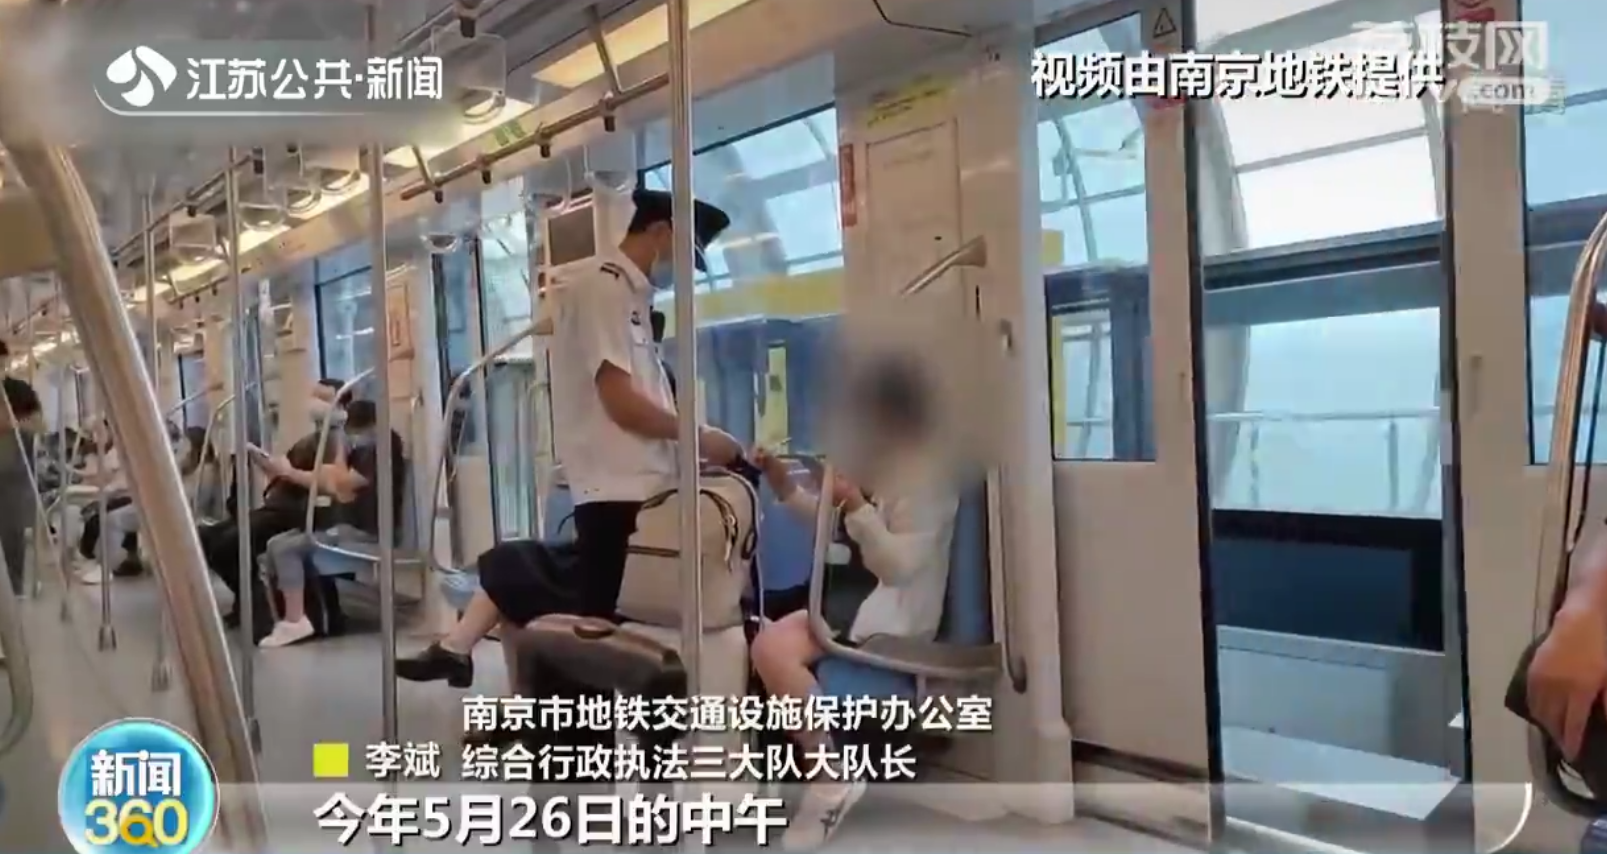 南京地铁开出手机外放声音“罚单”网友建议全国推广